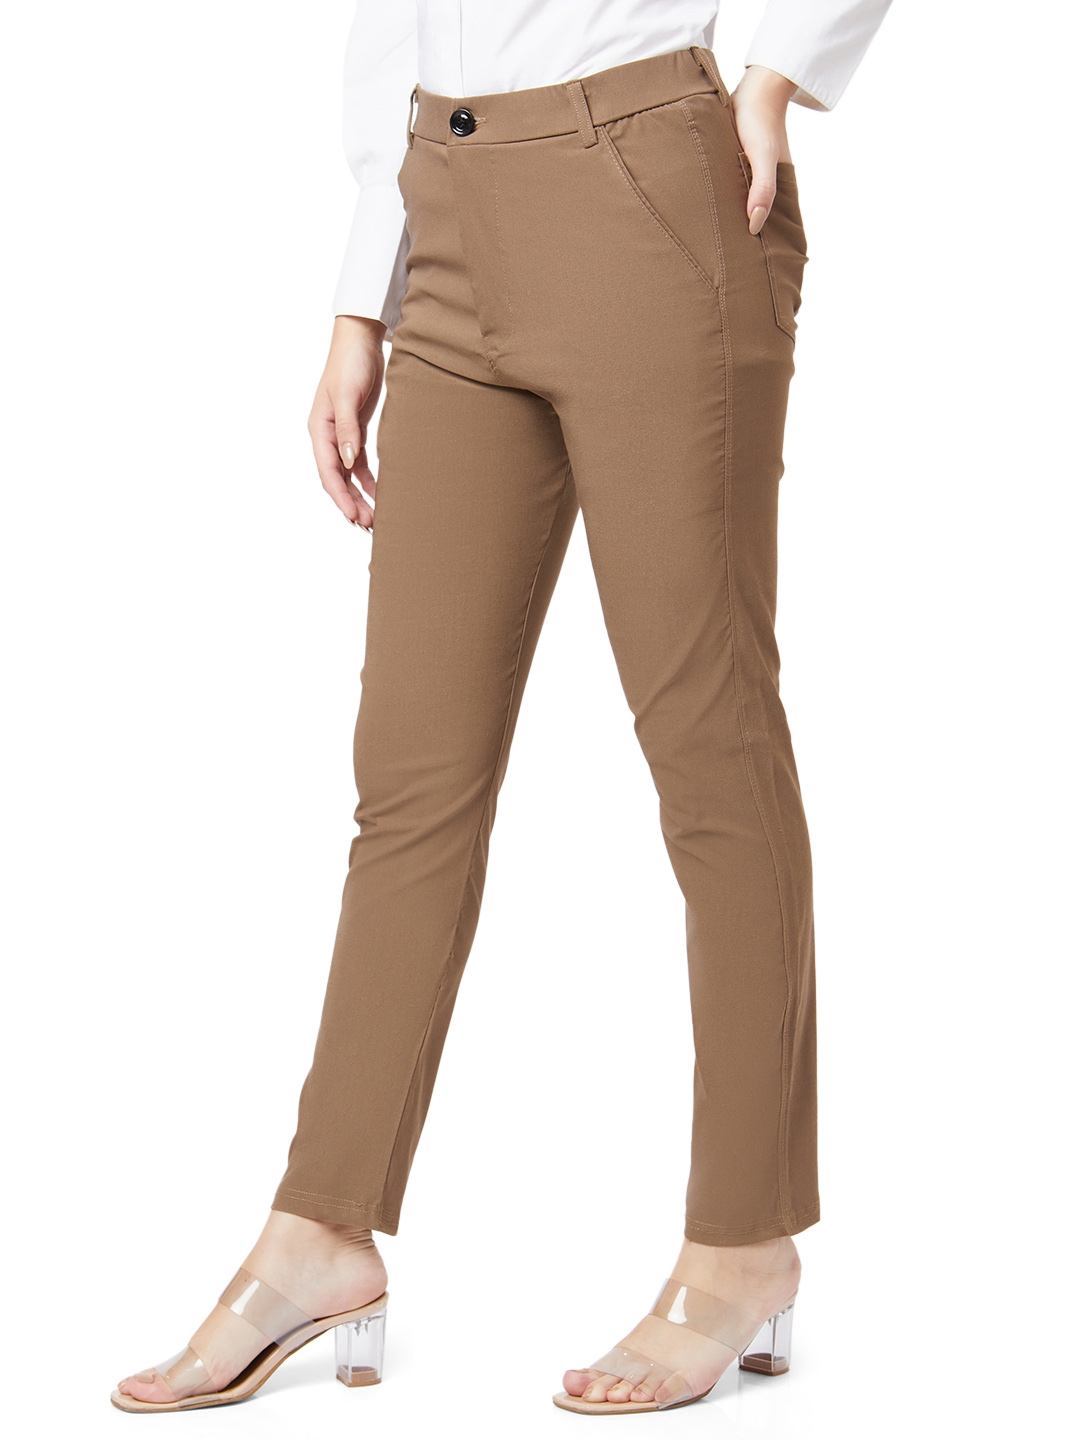 Smarty Pants women's cotton lycra ankle length pastel grey color